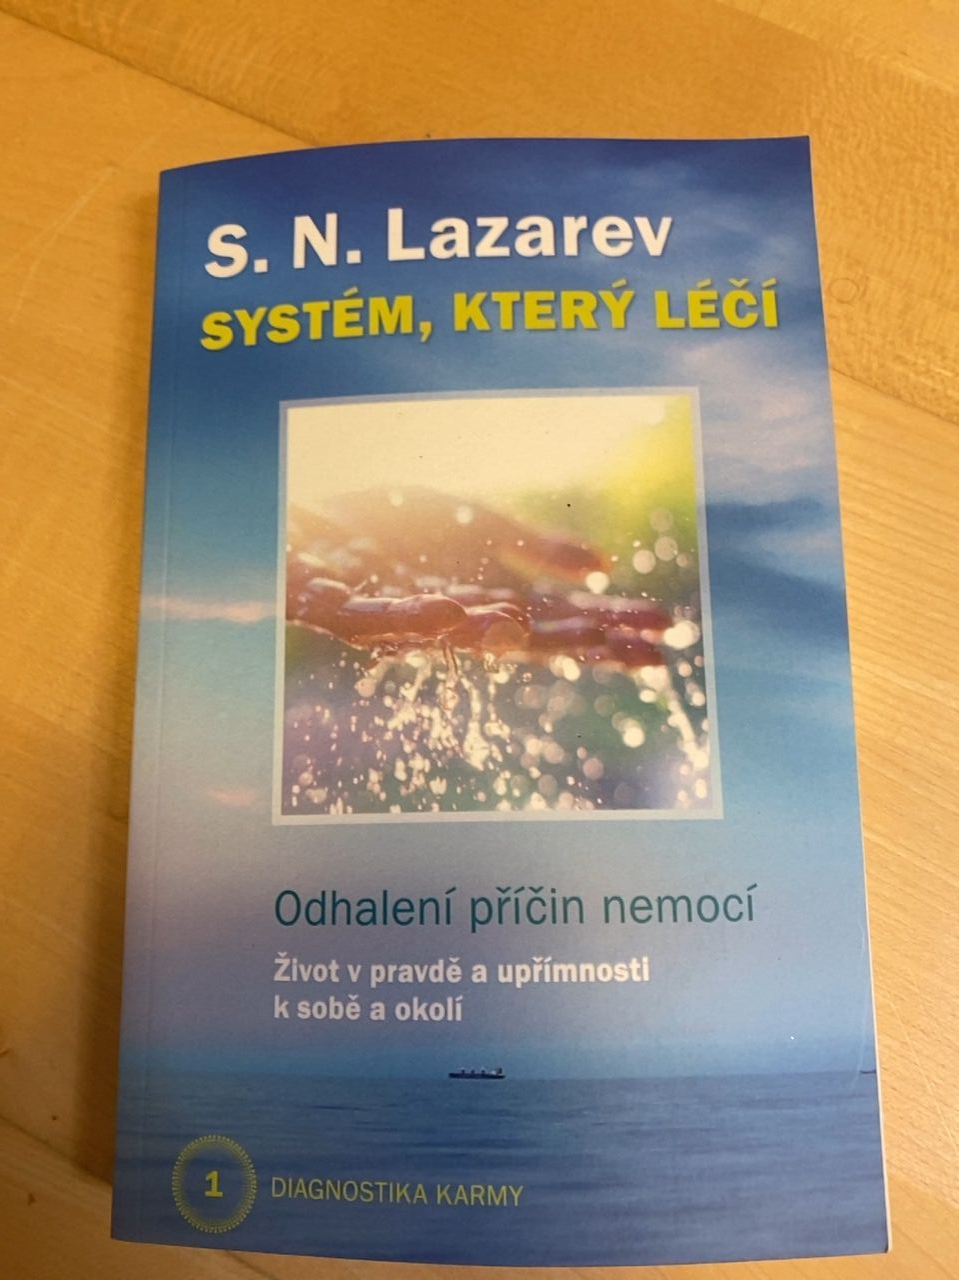 Kniha "Systém který léčí" S.N.Lazarev 